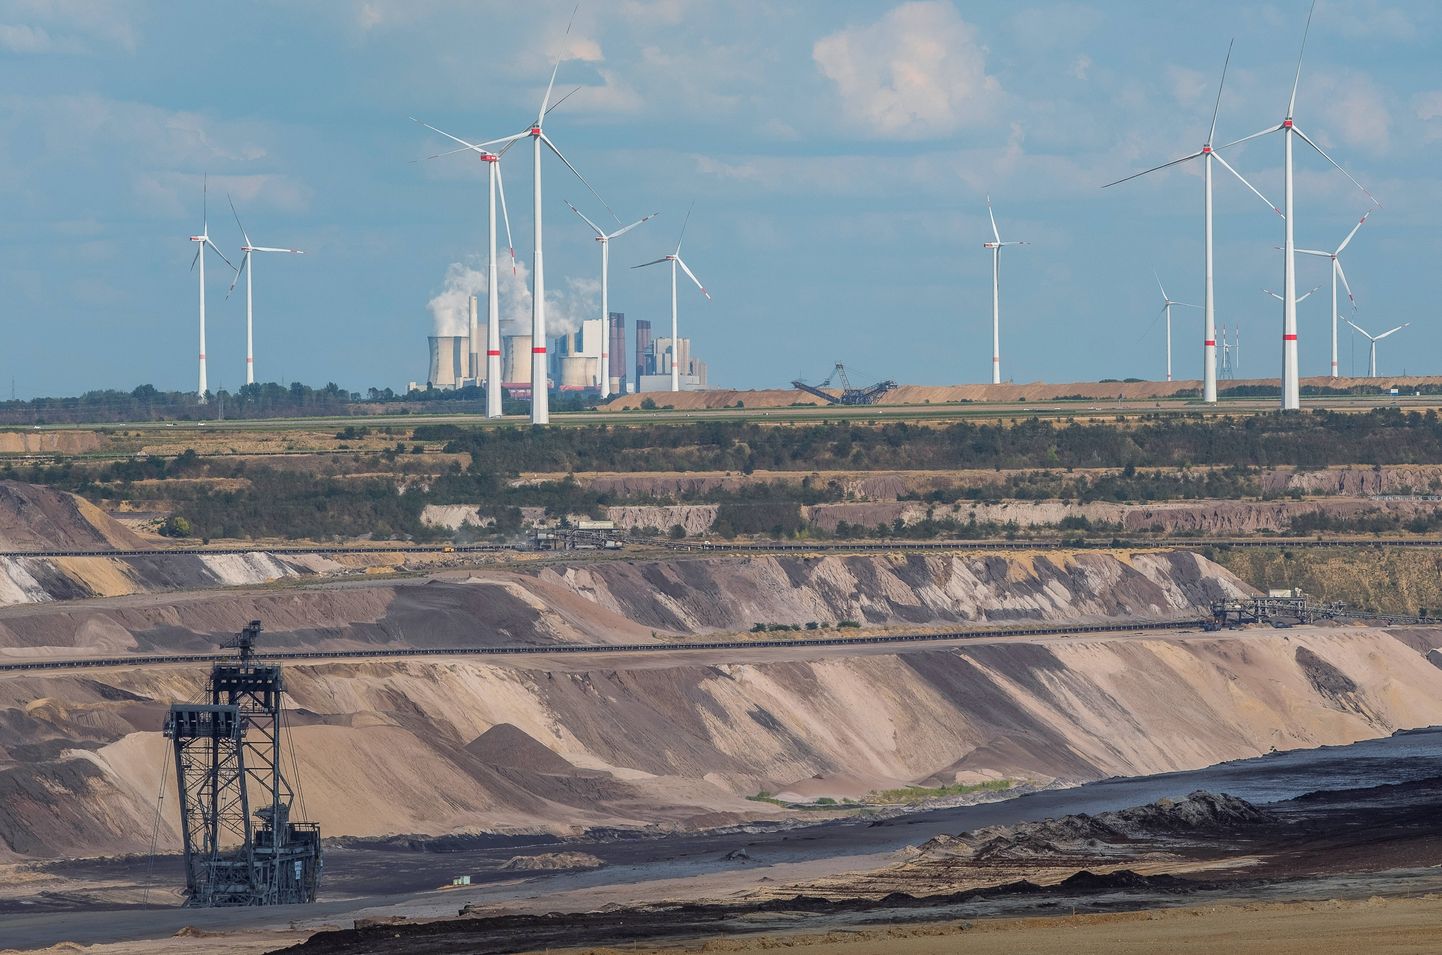 Pildil olevad tuulikud võetakse söekaevanduse laiendamise tõttu maha.